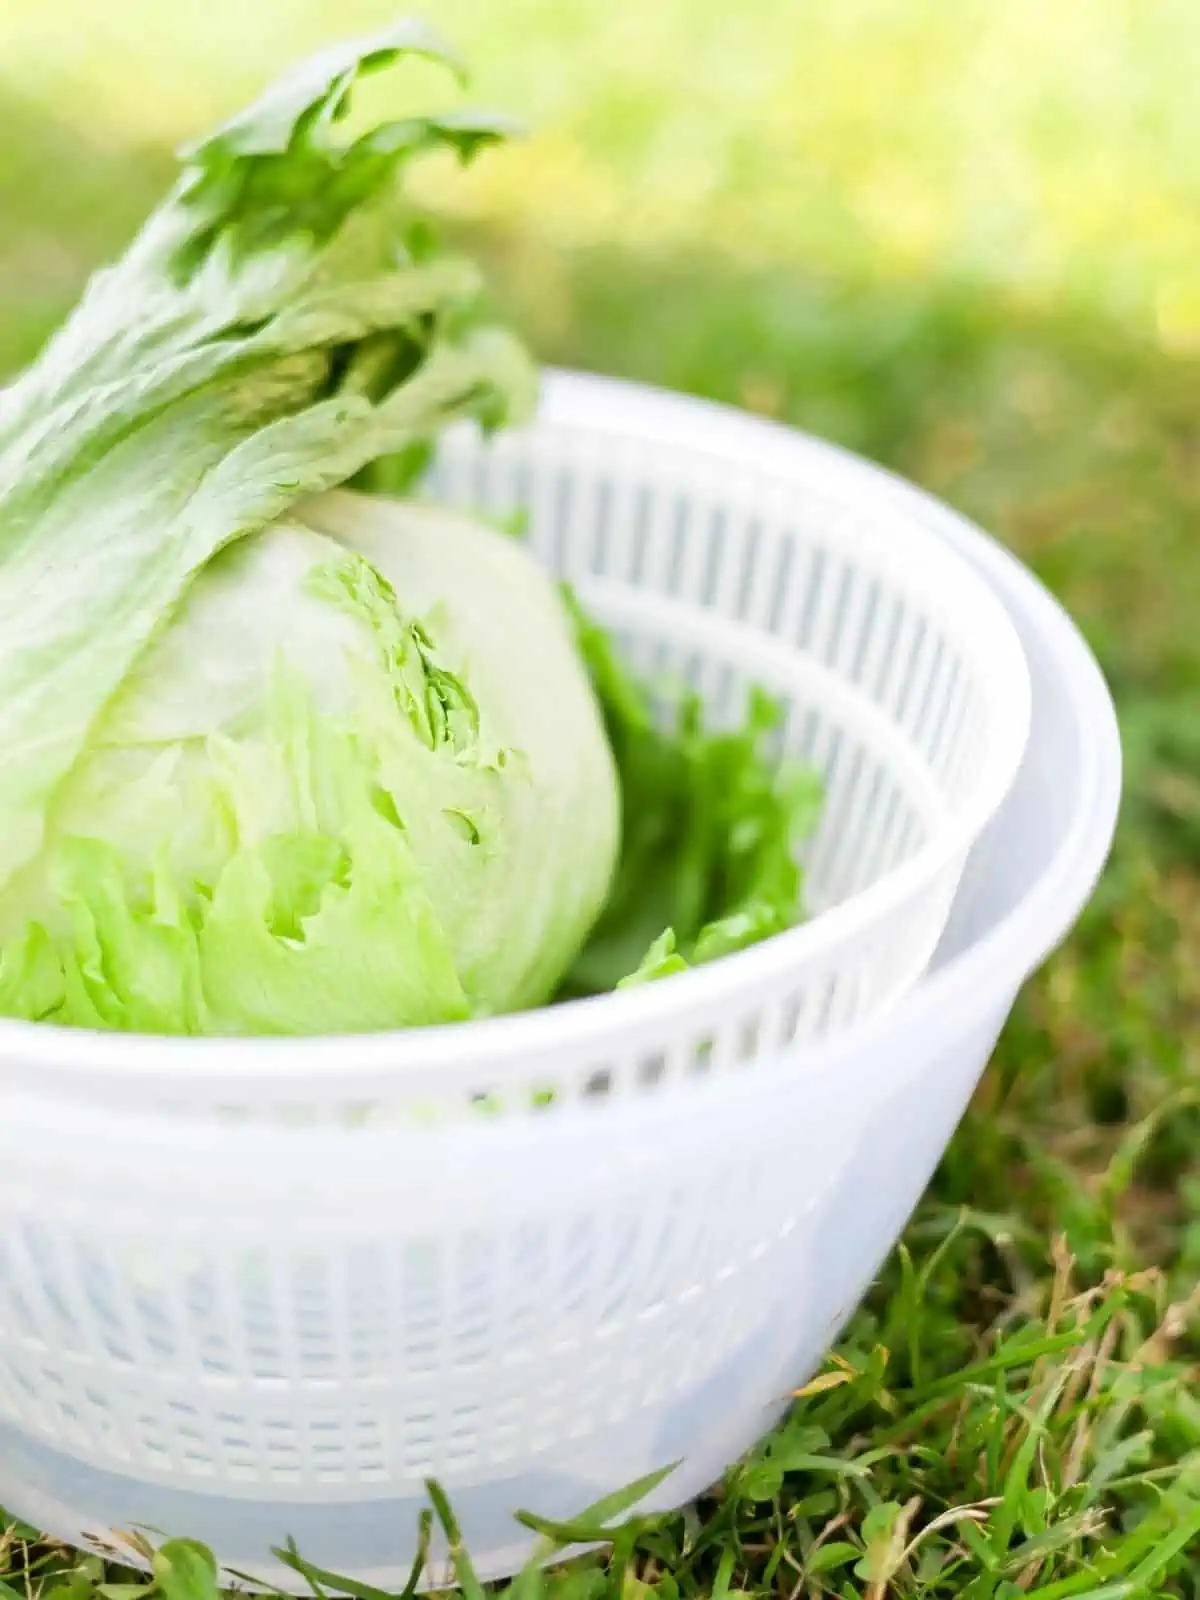 Lettuce in white salad spinner